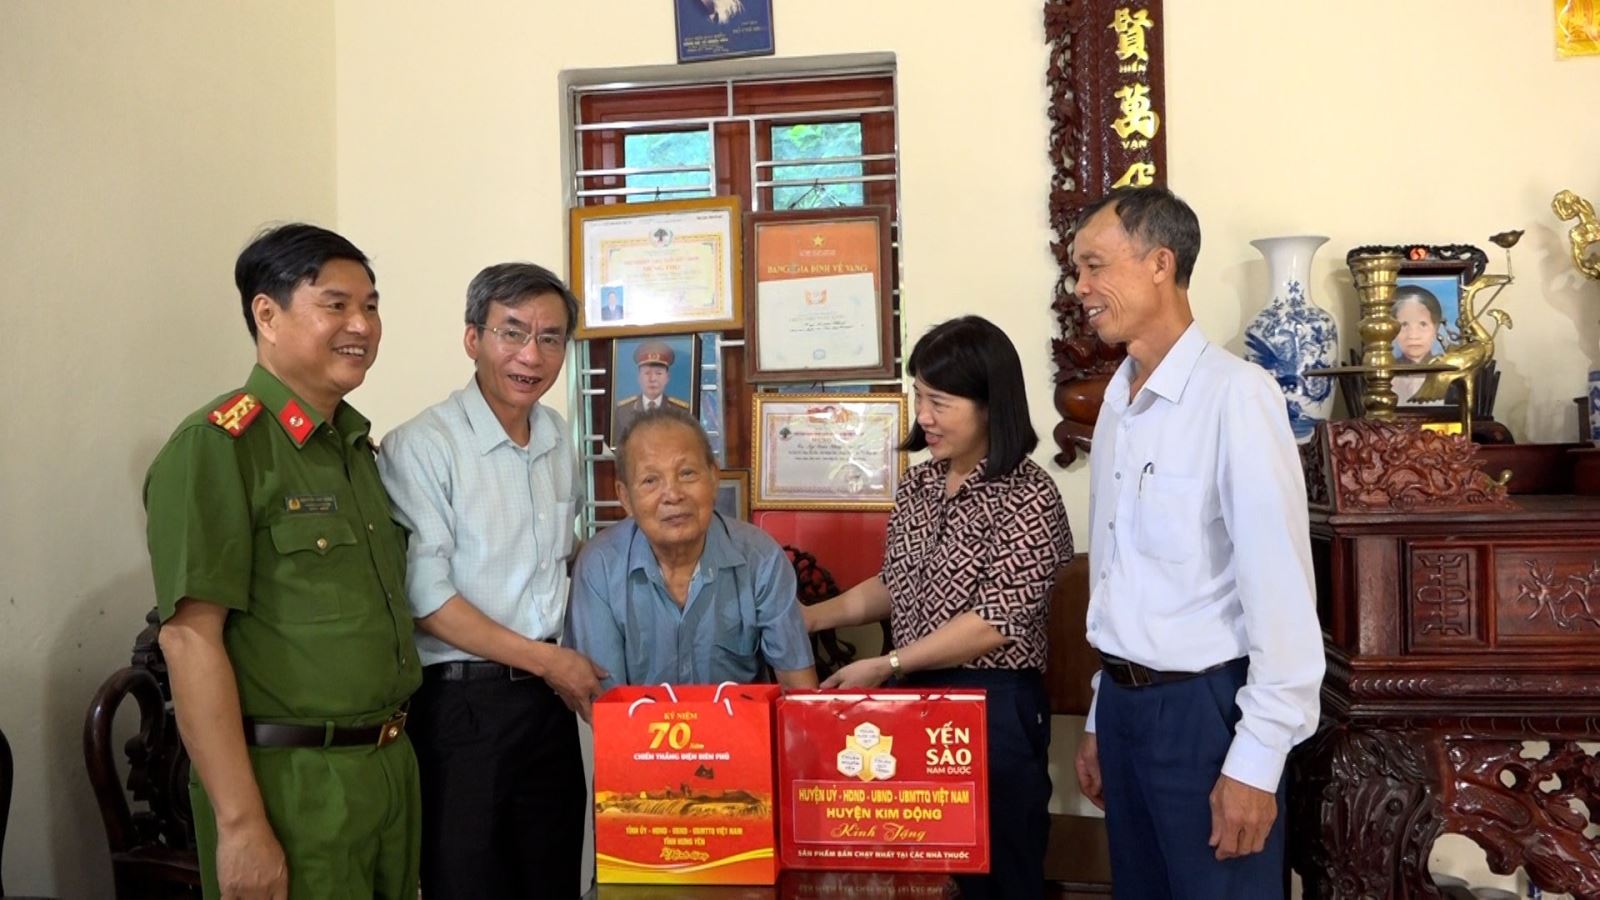 Lãnh đạo huyện tổ chức thăm, tặng quà các chiến sĩ Điện Biên, thanh niên xung phong và dân công hỏa tuyến nhân dịp 70 năm chiến thắng Điện Biên Phủ